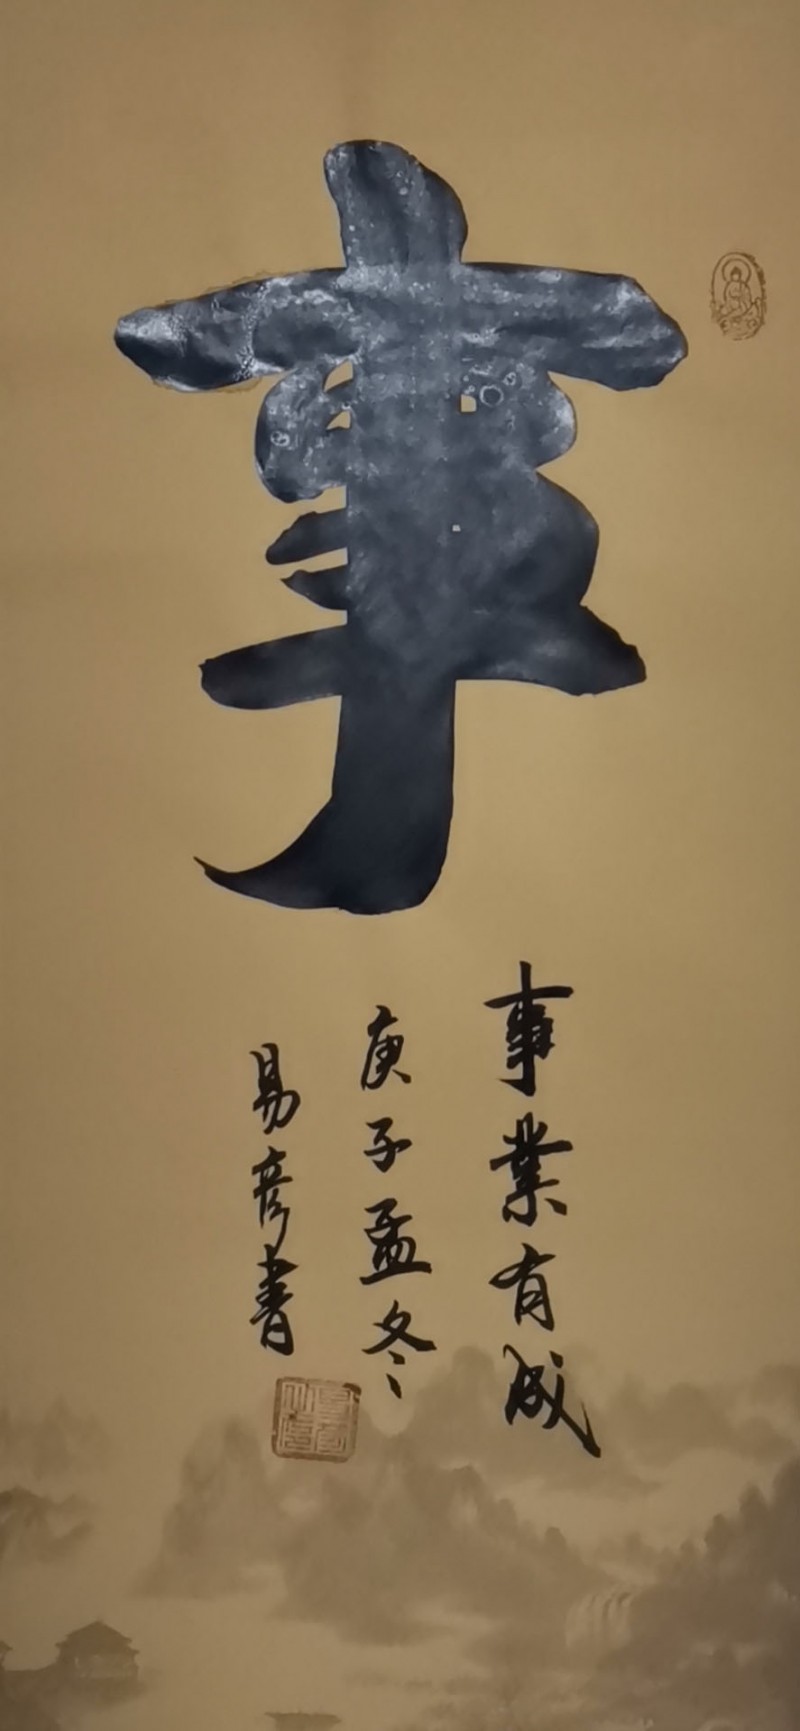 中国楹联学会中宣盛世文化艺术交流中心书画风采展示——易彦